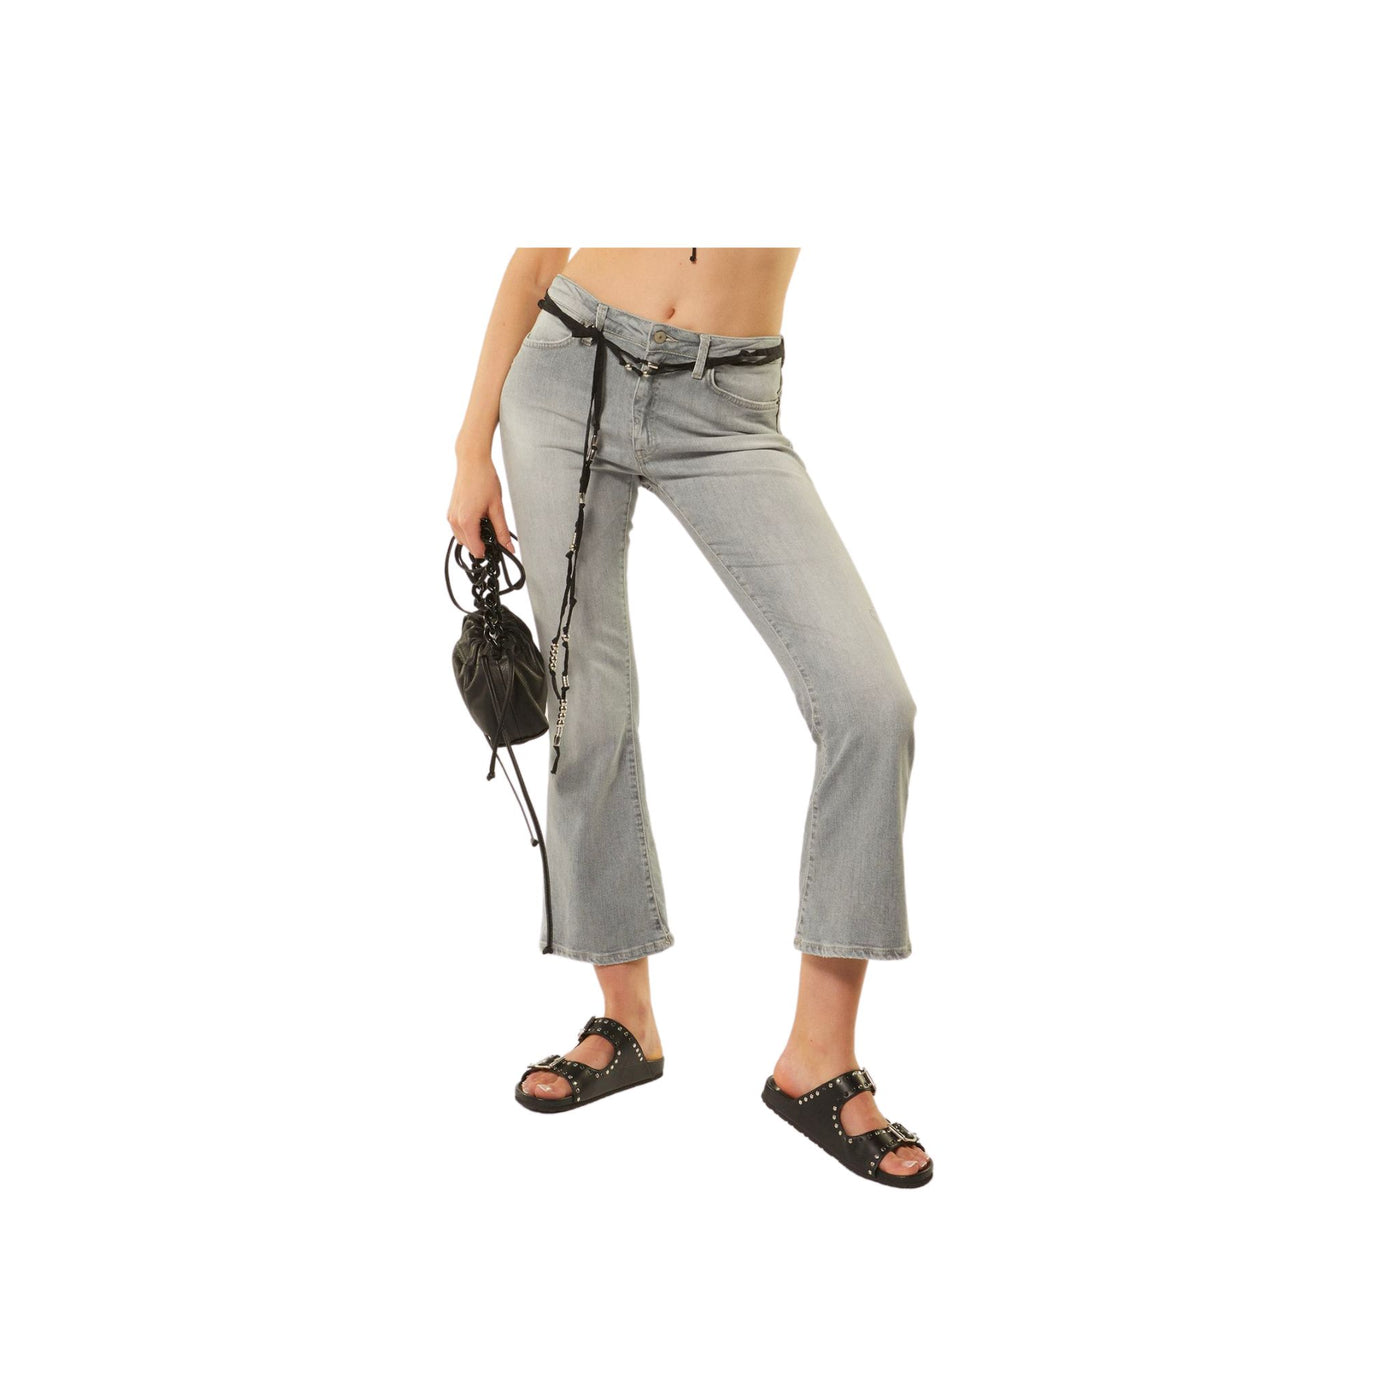 Jeansato model women's trousers